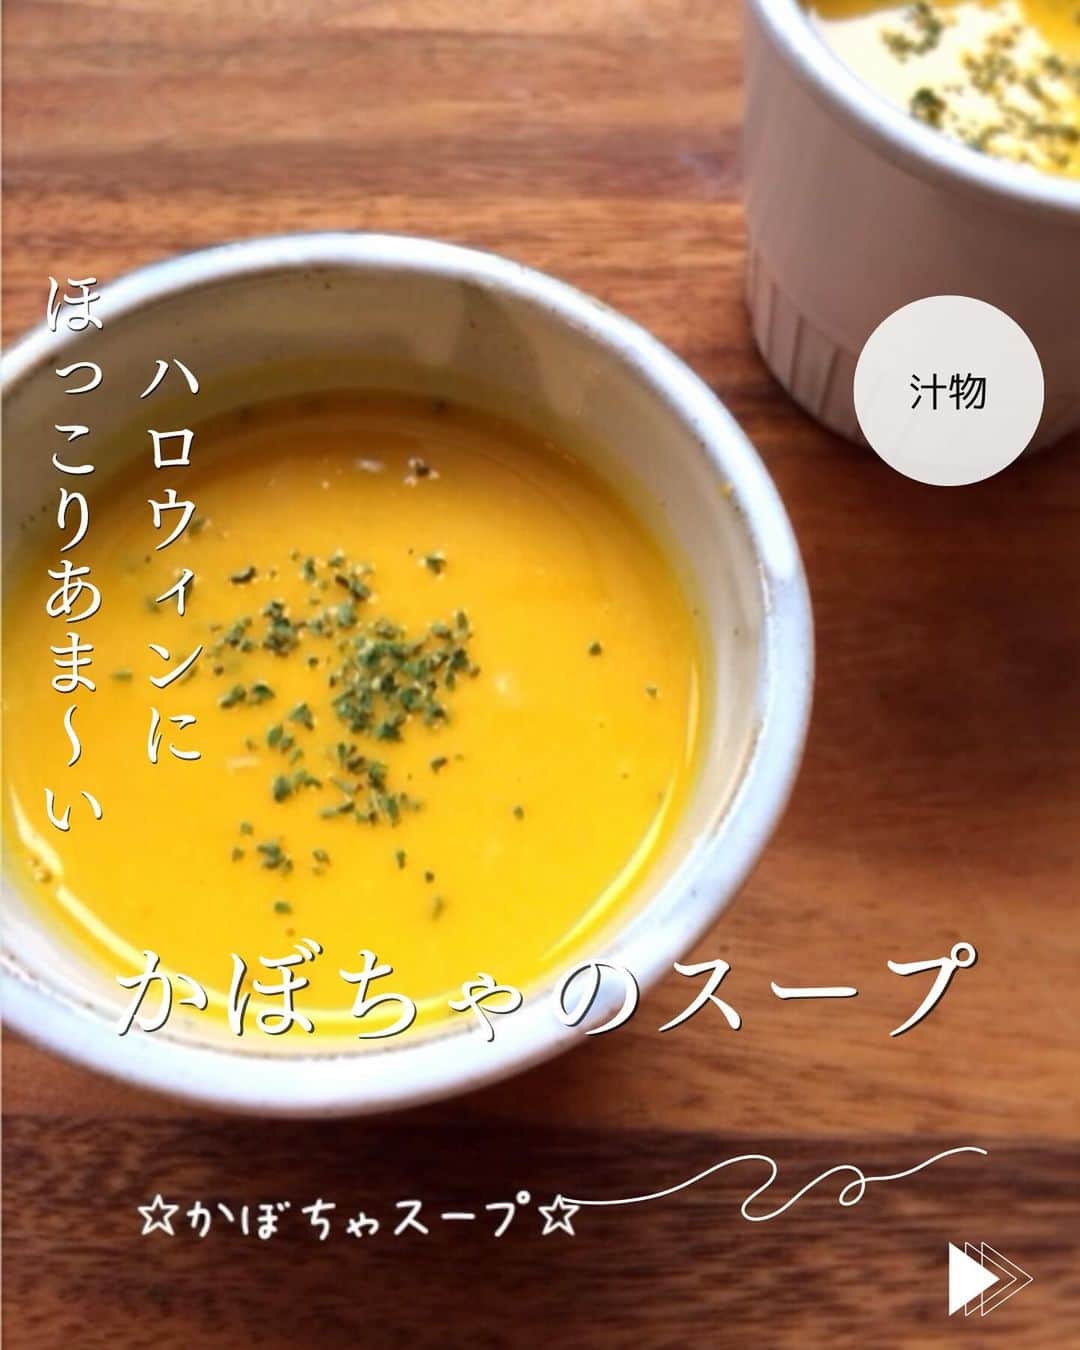 かみじともこのインスタグラム：「☆#かぼちゃスープ ☆  @eiyoushino_recipe  🆔レシピID: 2781718  今日のおすすめは 「かぼちゃスープ」👩🏻‍🍳 ハロウィンの🎃スープはかぼちゃスープ！ 昨日もクックパッドへアクセスがとても多かったレシピです。 レシピではブレンダーでガーッとなめらかにしてますが、味噌漉しやマッシャーなどを使っても大丈夫。 やや野菜の食感が残り美味しく作れます。 また、牛乳のかわりに豆乳でも大丈夫。 お好みで作ってみてくださいね！ ぜひ美味しくできますように☺️  💬💬💬 今日はハロウィンということで、みなさんハロウィンのお料理はされますか？🎃 我が家は子供たちも大きくなりかぼちゃのスープで 充分かもと思ってますが 今日は念のためかぼちゃのスープとかぼちゃの煮物も作ろうかなと思ってます。  💬💬💬 そして、最後のページに 楽天で購入したおすすめのスープを載せてます。 このスープ、試食会でミネストローネを試食して大感動。ほんとに具沢山でした！別の機会に色々セットになってるスープも購入してみたのですが、どのスープも具沢山。動画を見てもらえたらわかりやすいのですが液体より個体が多い感じ。 しかも味も美味しいです。 作り方はレンジで40秒温めるだけなので忙しい日にはもちろん、普段の食事にもおすすめのスープです。 ＿＿＿＿＿＿＿＿＿＿＿＿＿＿＿＿＿＿＿＿  cookpadに毎日たくさんのつくれぽを ありがとうございます！ みなさんから届いた大切なつくれぽは 私の大切な宝物です🤍 つくれぽ送ってくれるみなさん大好きです😍 ＿＿＿＿＿＿＿＿＿＿＿＿＿＿＿＿＿＿＿＿＿  🍳作られたお料理はぜひ🍳 【 #栄養士のれしぴ 】 【 #栄養士のれしぴのレシピ 】 を付けてくださいね✨ (れしぴはひらがなです✍️) ストーリーズで ご紹介させていただく事があります♪ ＿＿＿＿＿＿＿＿＿＿＿＿＿＿＿＿＿＿＿＿＿＿  お知らせ❶  YouTubeはじめました ストーリーズ、ハイライトのリンクからどうぞ ▶︎▶︎▶︎ @eiyoushino_recipe  最近の動画では 【絶品！ねぎ塩だれ5選】 【サラダ作りにおすすめのキッキン道具5選】 を紹介しています。 ＿＿＿＿＿＿＿＿＿＿＿＿＿＿＿＿＿＿＿＿＿＿  お知らせ❷  楽天ROOMに 愛用のキッチン用品や、便利な道具 美味しかった物や、食器など載せてます♪ ＿＿＿＿＿＿＿＿＿＿＿＿＿＿＿＿＿＿＿＿＿＿  お知らせ❸  新刊【☆栄養士のれしぴ☆黄金だれ】 宝島社より好評販売中！ ＿＿＿＿＿＿＿＿＿＿＿＿＿＿＿＿＿＿＿＿＿＿＿  #栄養士のれしぴ #栄養士のれしぴのレシピ  #かぼちゃのスープ #ハロウィン #かぼちゃレシピ #副菜 #簡単副菜 #簡単料理　 #基本の料理　 #基本のレシピ　 #家庭料理　 #定番料理 #おうちごはん #レシピ #簡単レシピ #暮らし #暮らしを楽しむ #クックパッド　 #cookpad #recipe #cooking #料理 #器 #30代　#40代  #50代　#60代 #youtubeはじめました #楽天room」